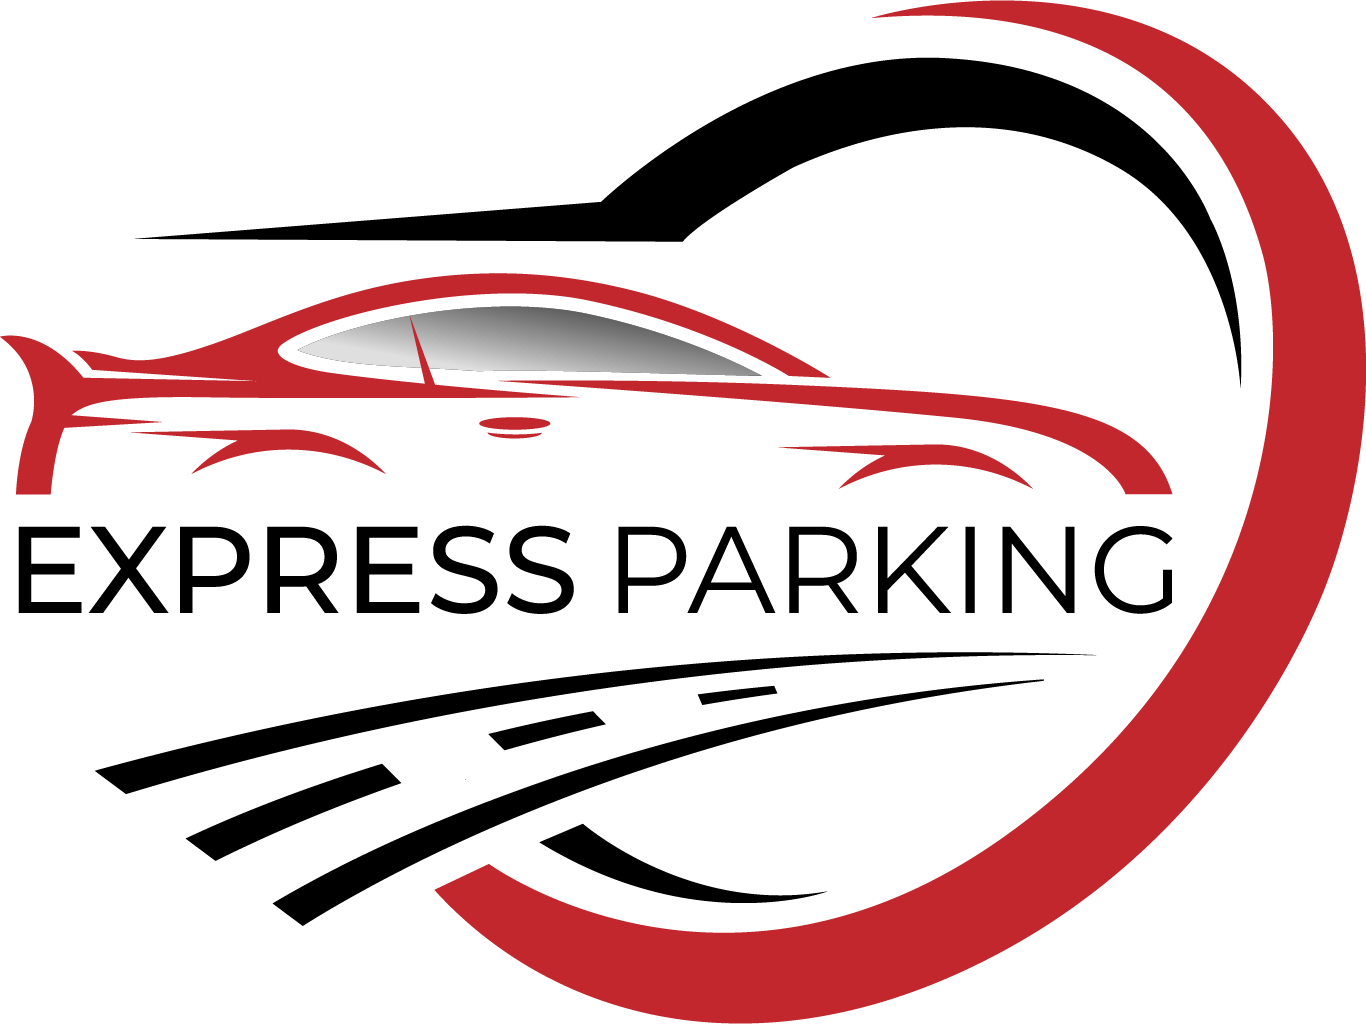 Express parking logo